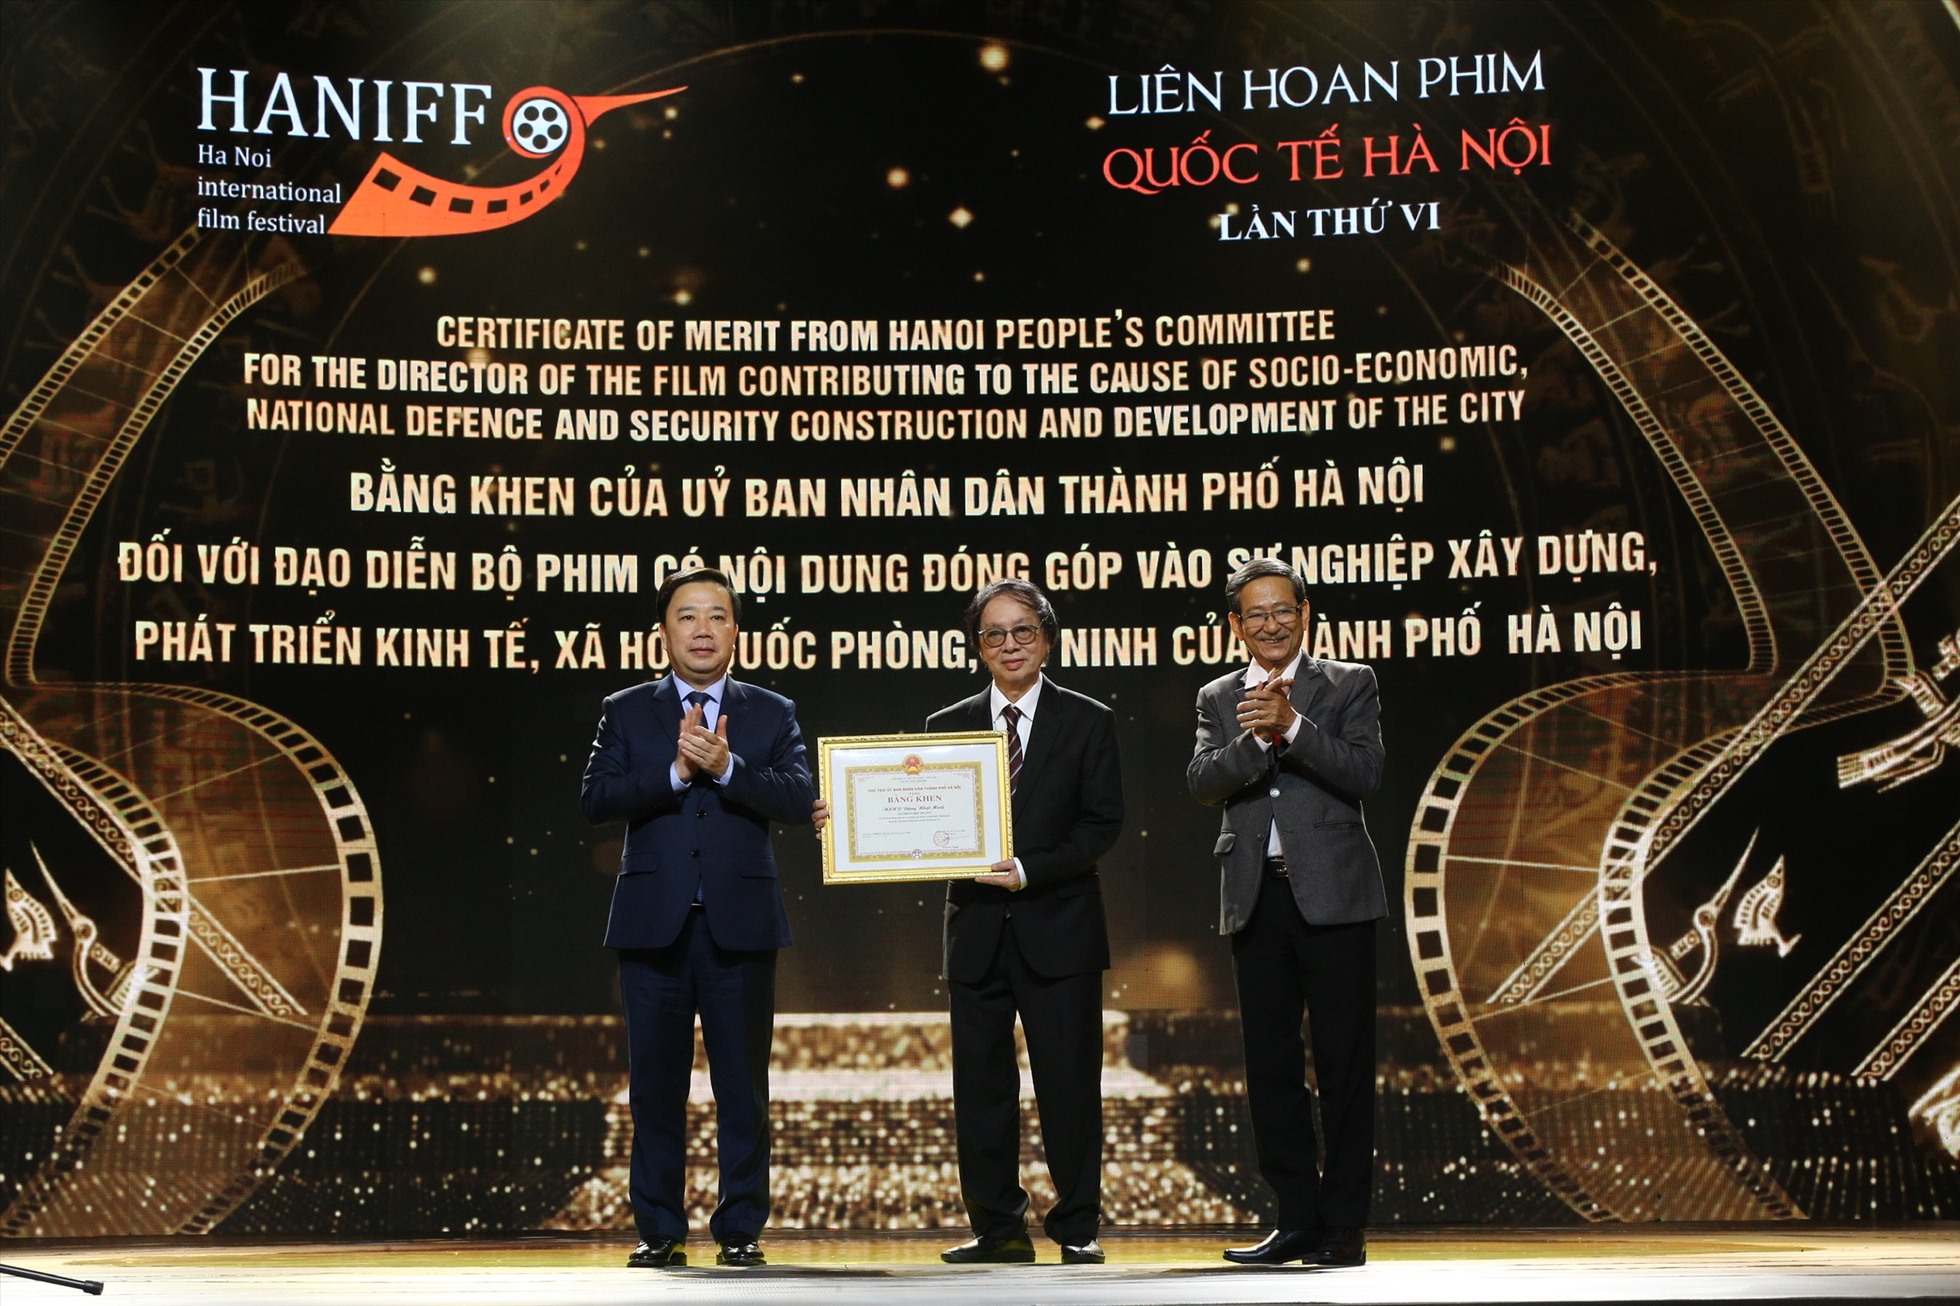 NSND Đặng Nhật Minh - đạo diễn phim “Hoa nhài” được tặng Bằng khen cho phim có nội dung đóng góp vào sự nghiệp xây dựng và phát triển thành phố Hà Nội.